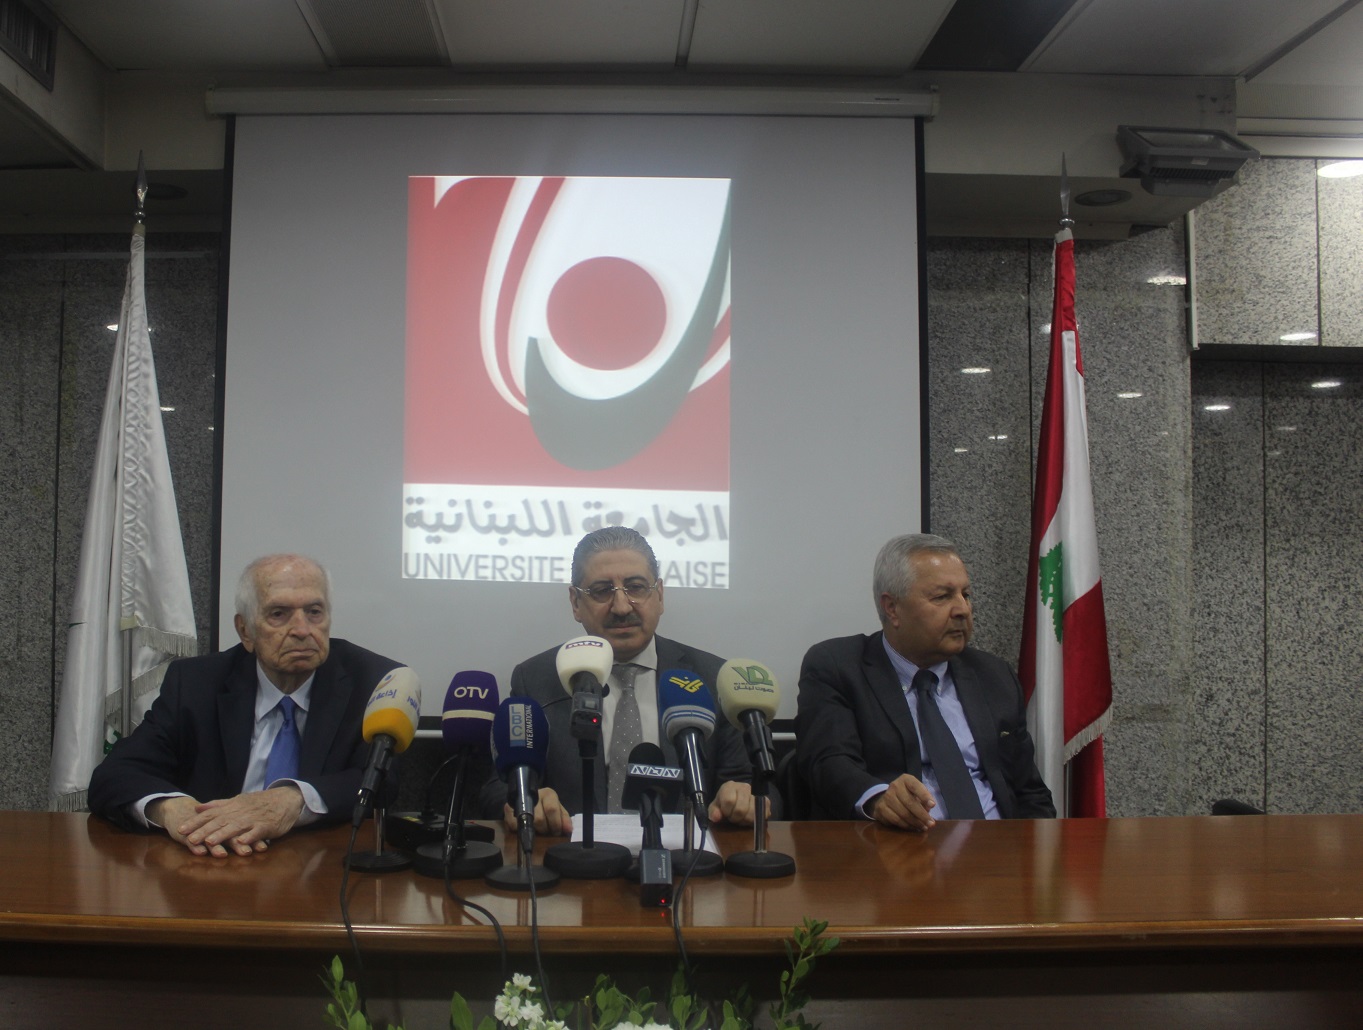 "اللبنانية" تُعتمد من المجلس الأعلى لتقييم البحوث والتعليم العالي